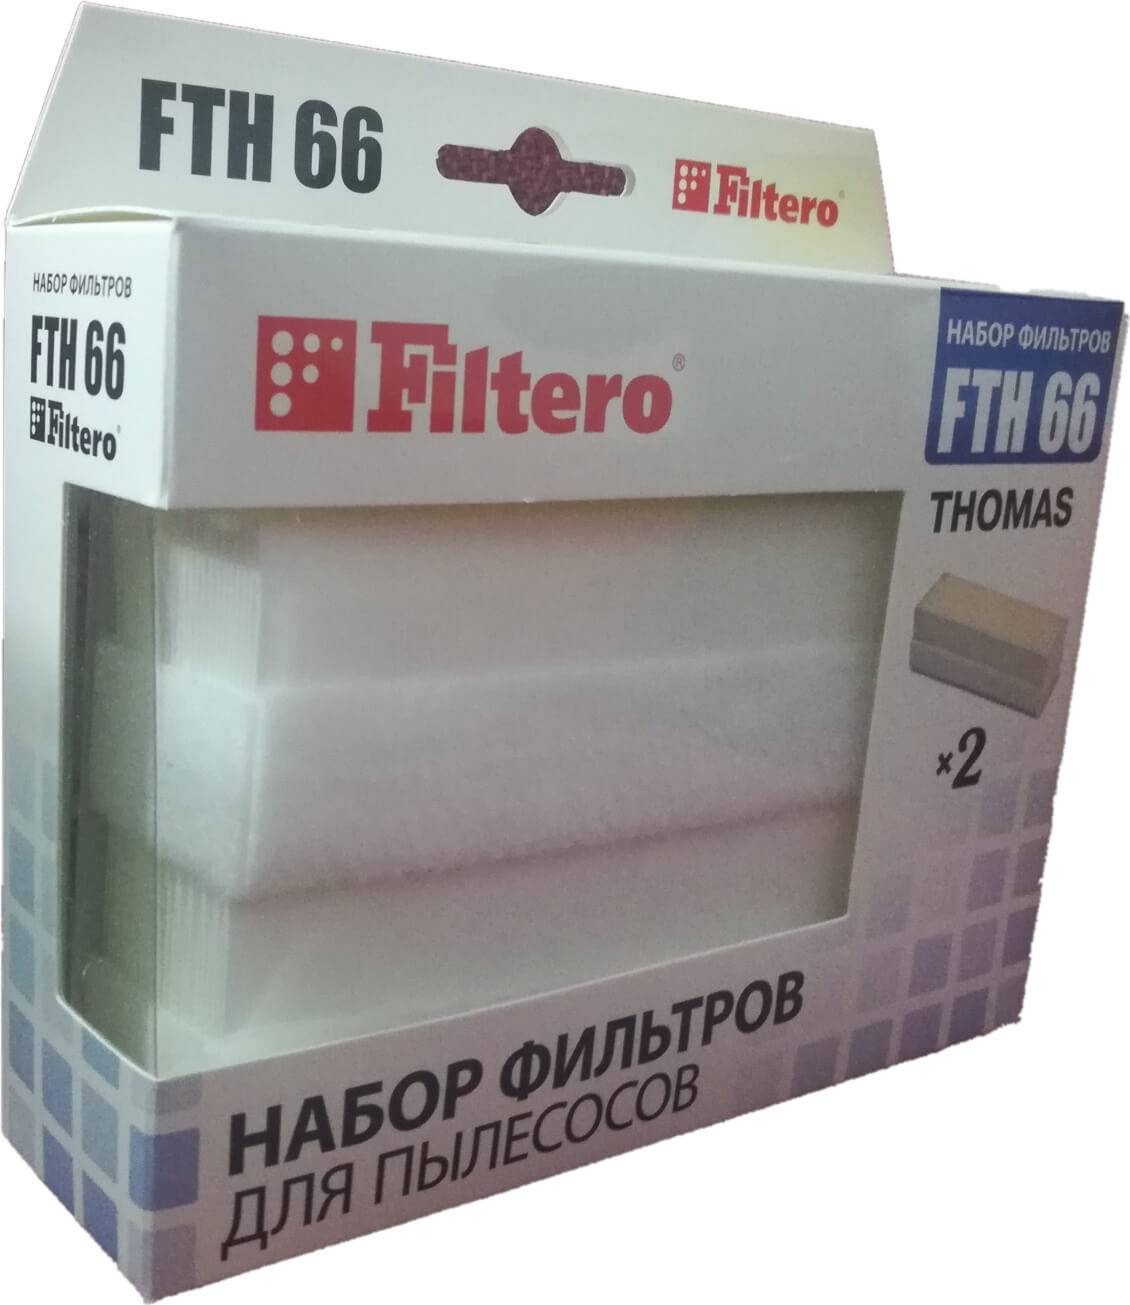 Набор HEPA фильтров для пылесосов Thomas Filtero FTH 66 от интернет магазина Filterro.kz